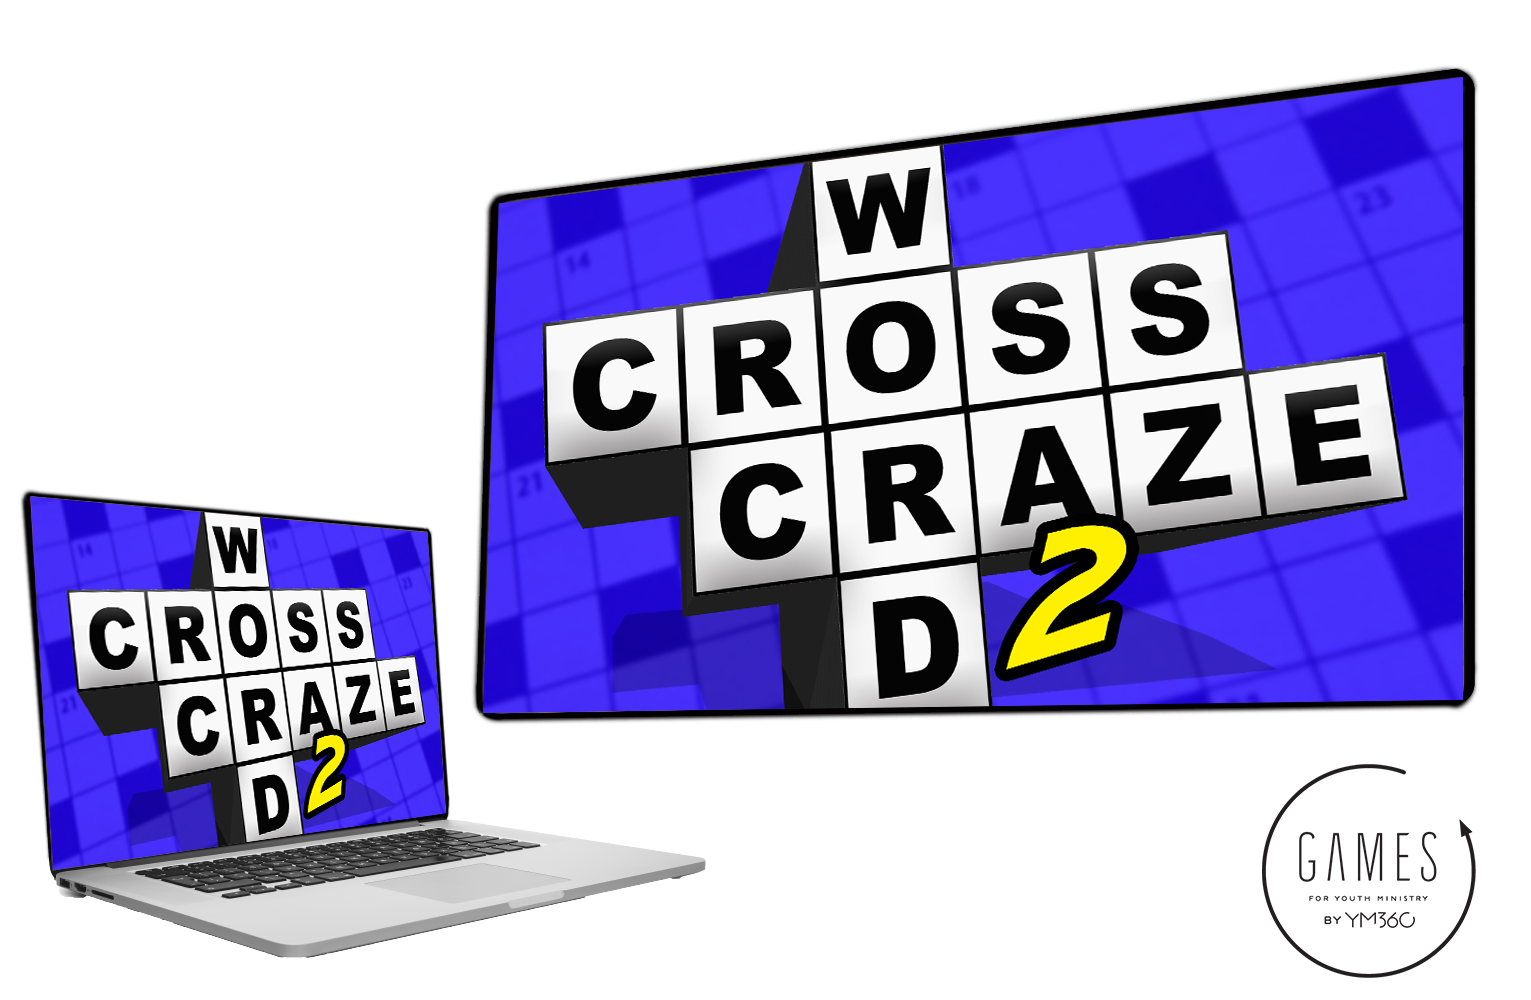 Crossword Craze 2